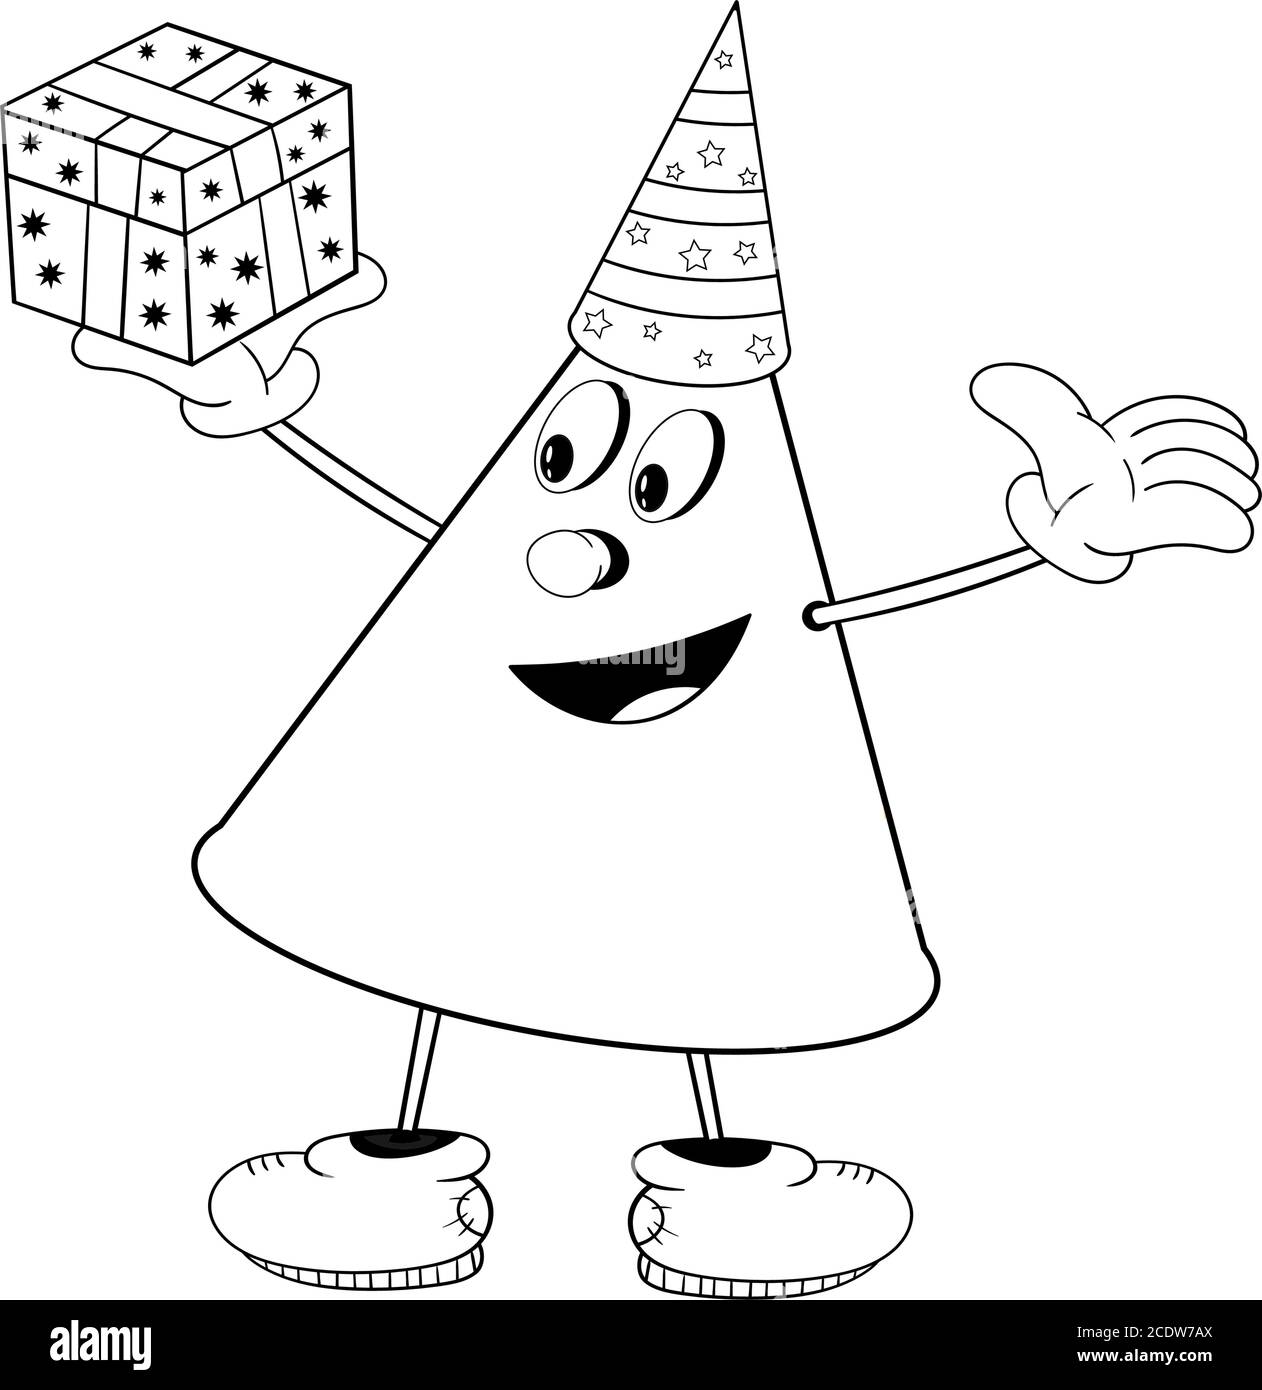 Un cono divertido en una gorra festiva sostiene una caja de regalo en su mano y sonríe. Colorido divertido en el estilo de los cómics Ilustración del Vector